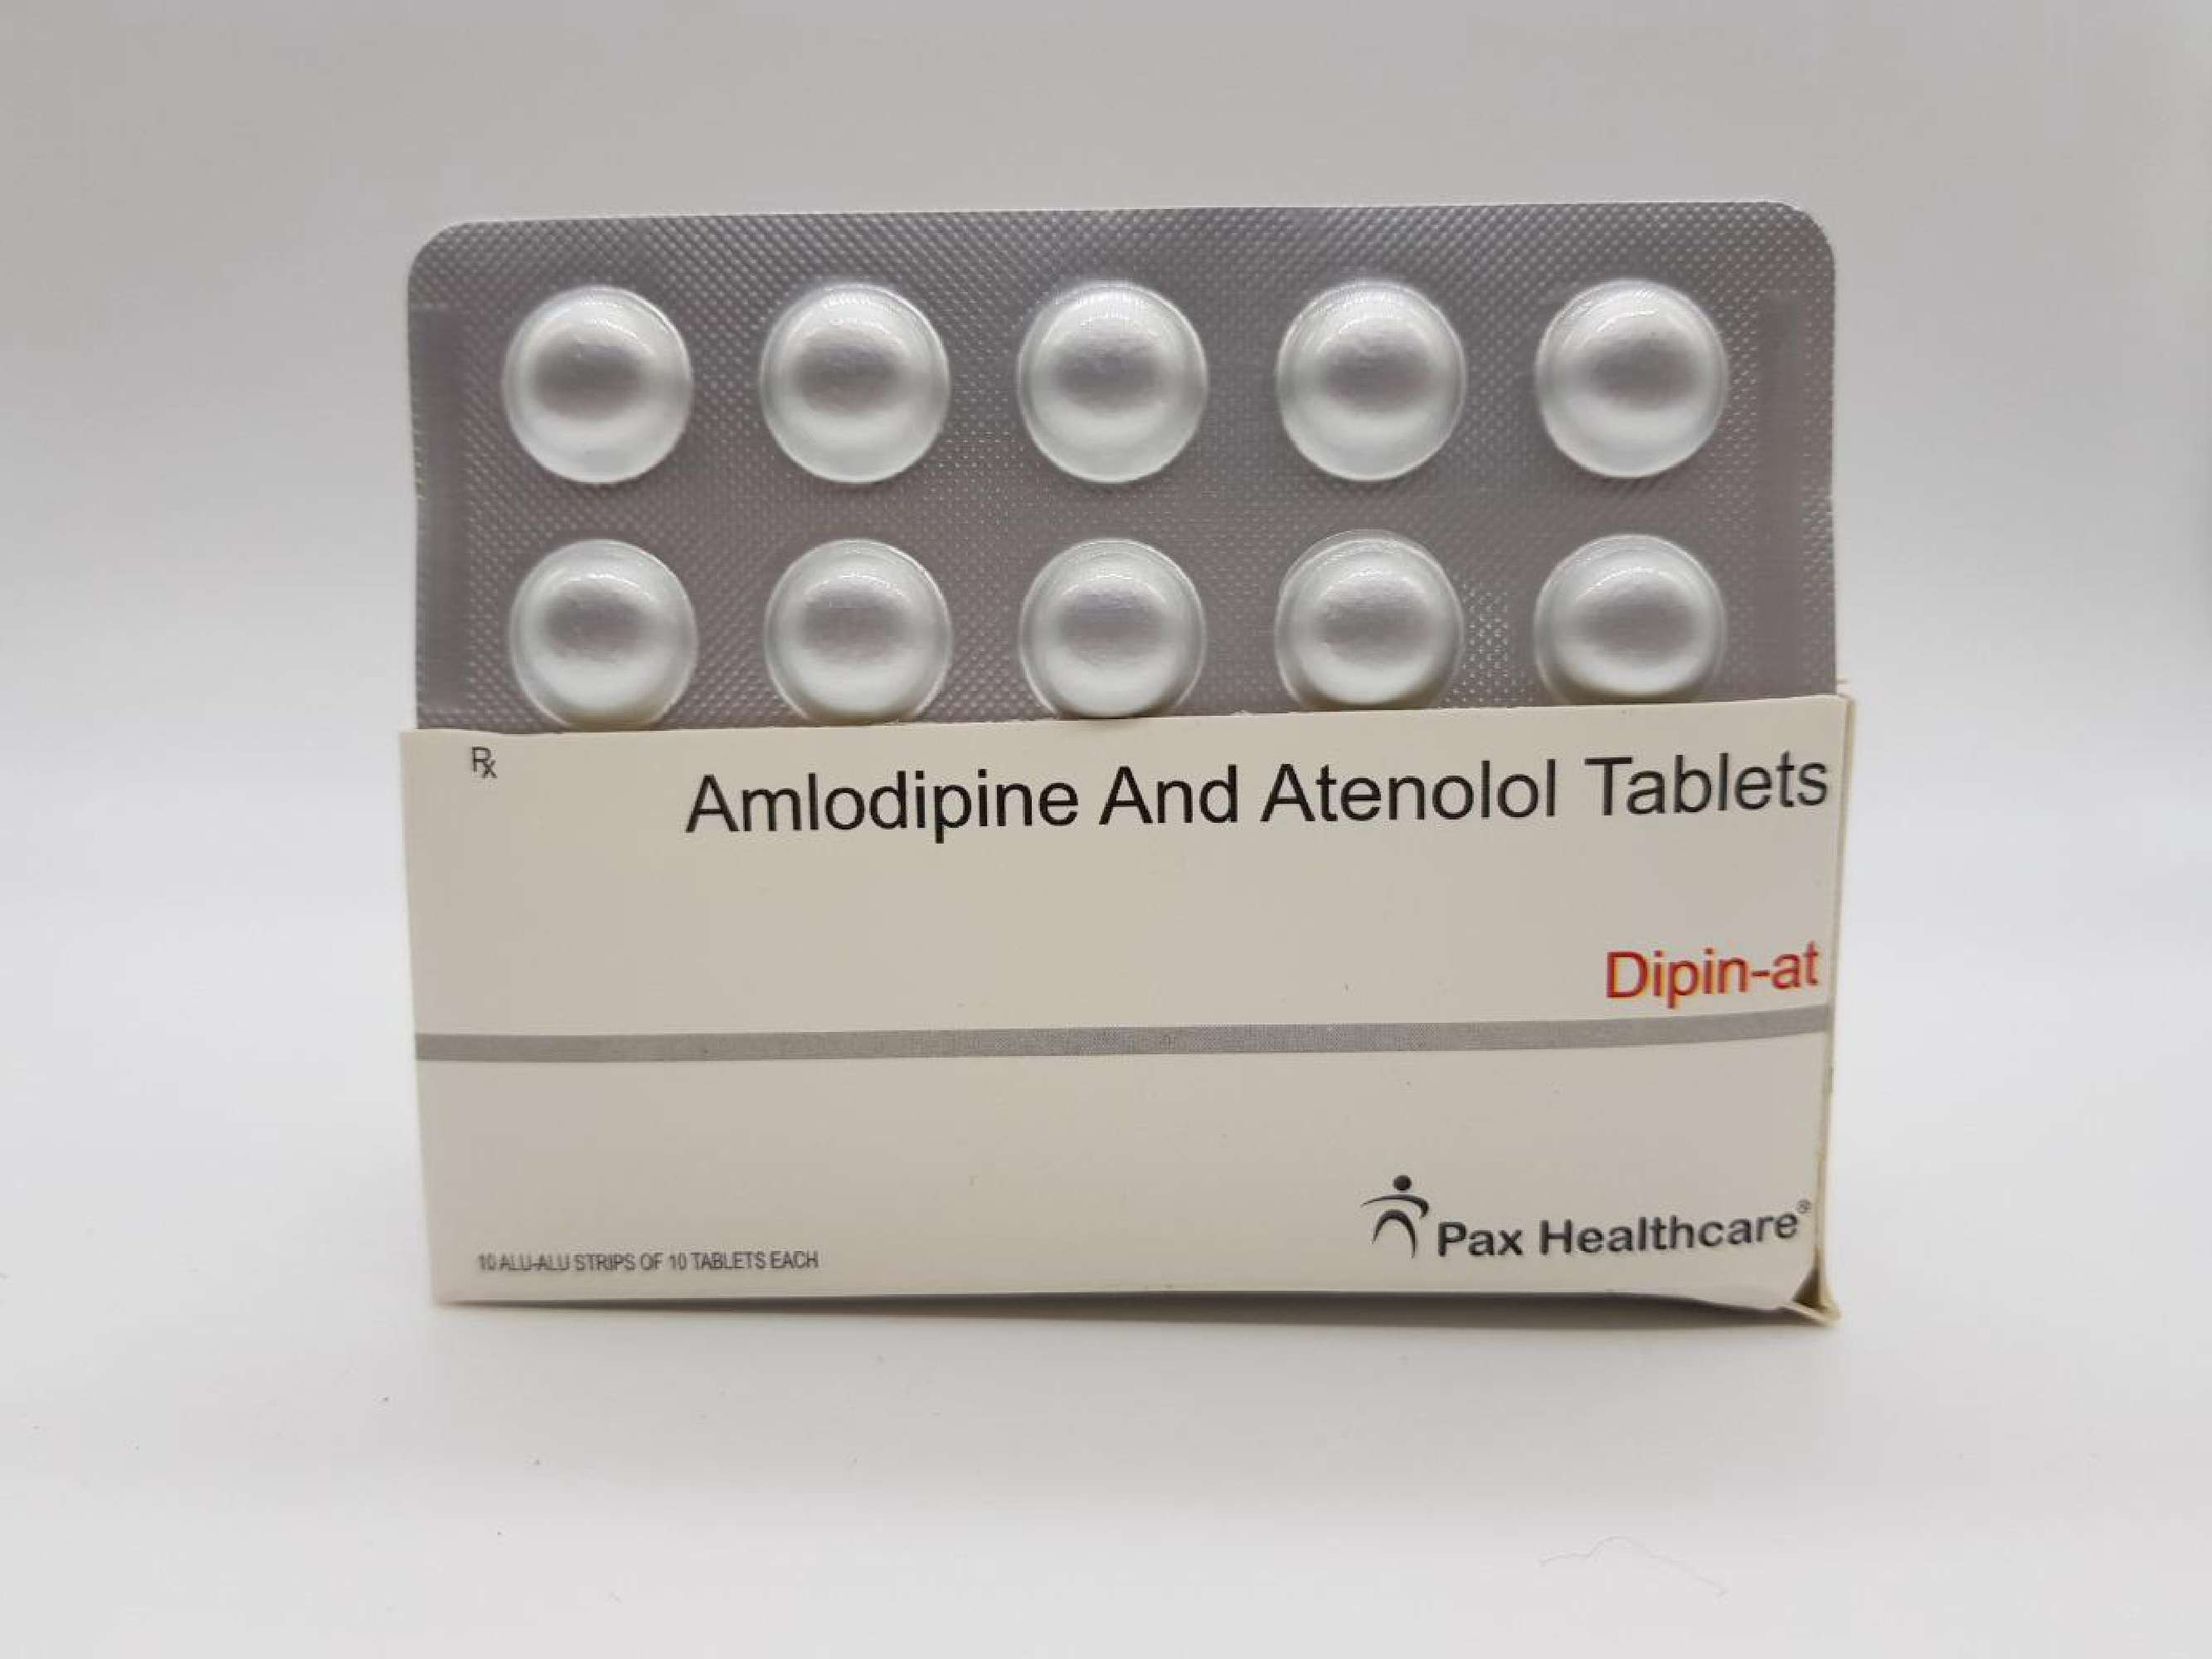 amlodipine 5 mg +atenolol 50 mg